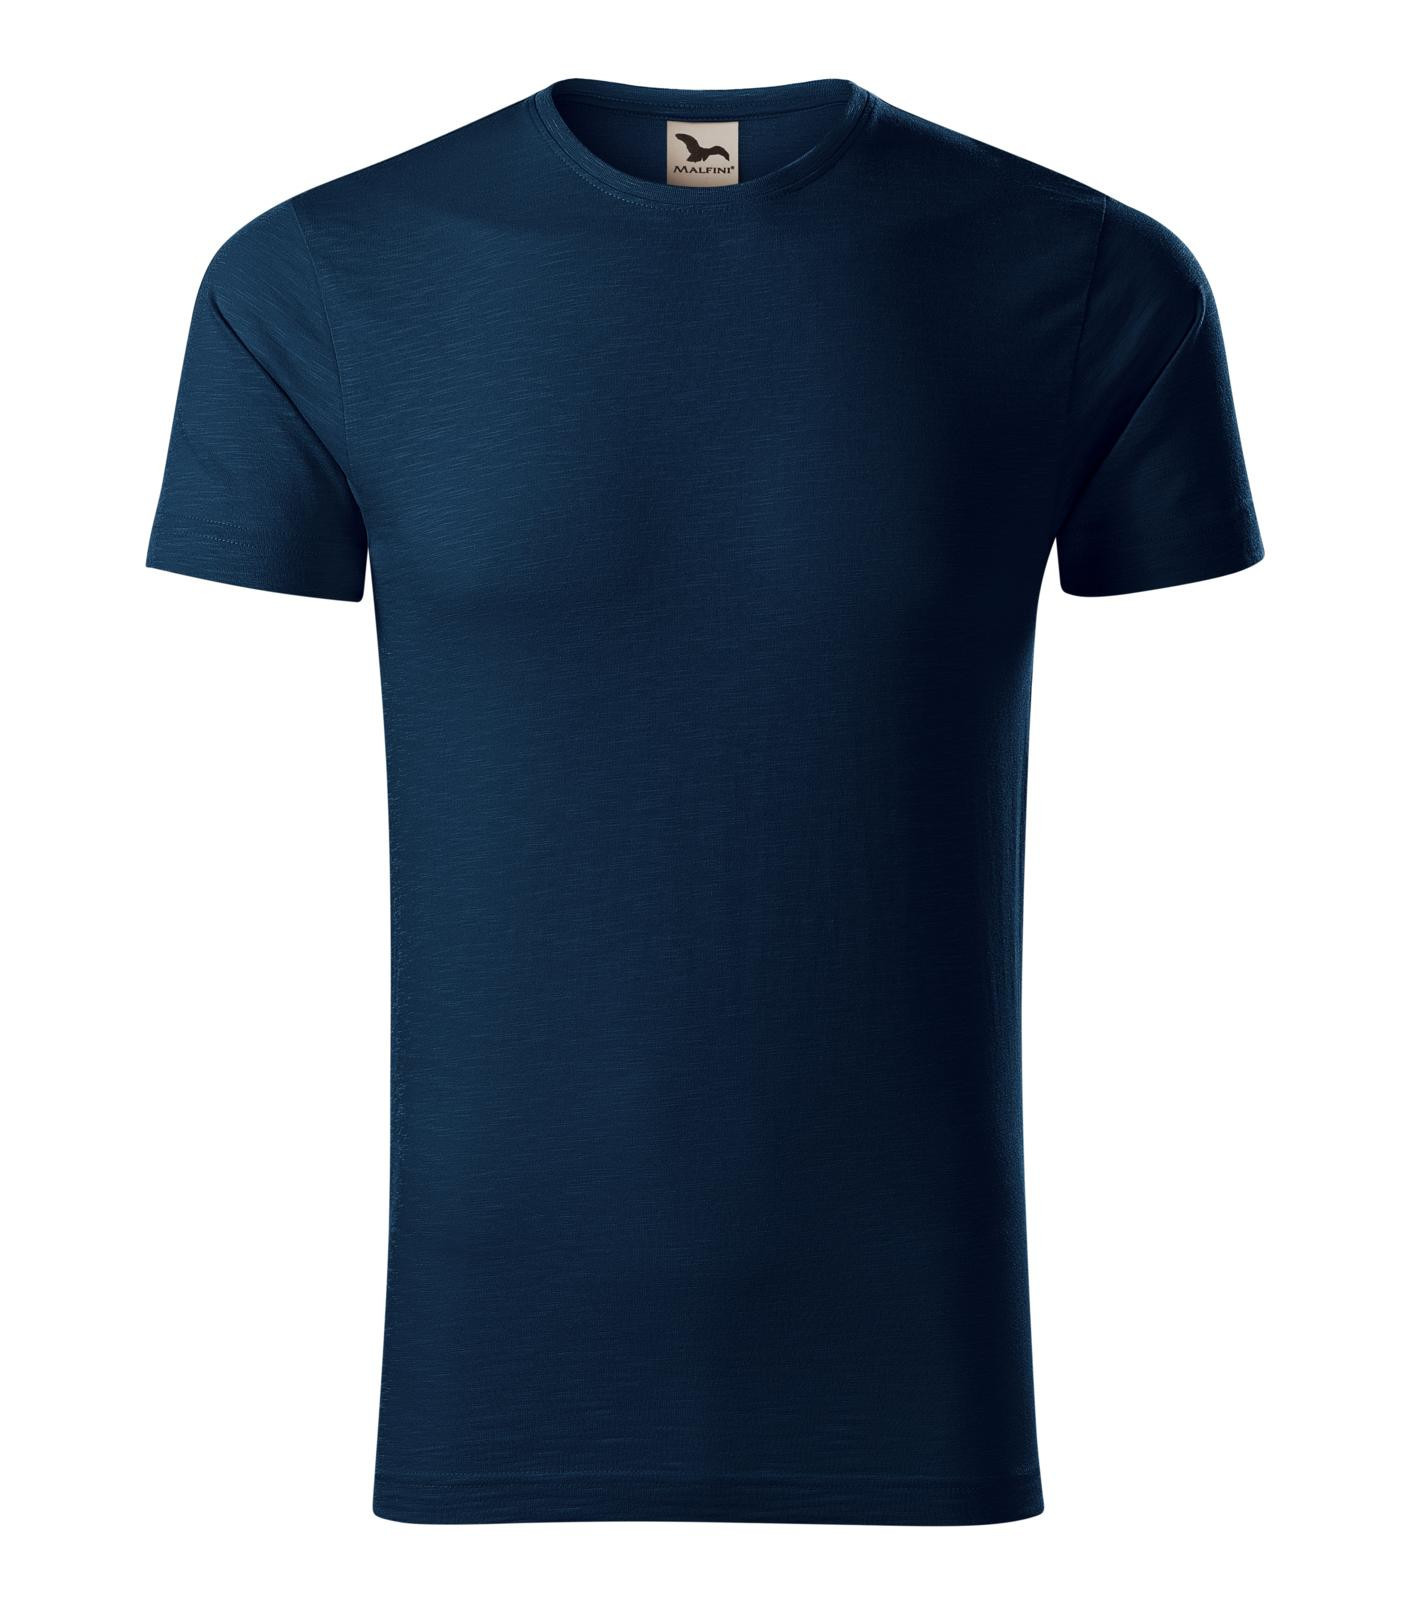 Pánske bavlnené tričko Malfini Native 173 - veľkosť: M, farba: tmavo modrá